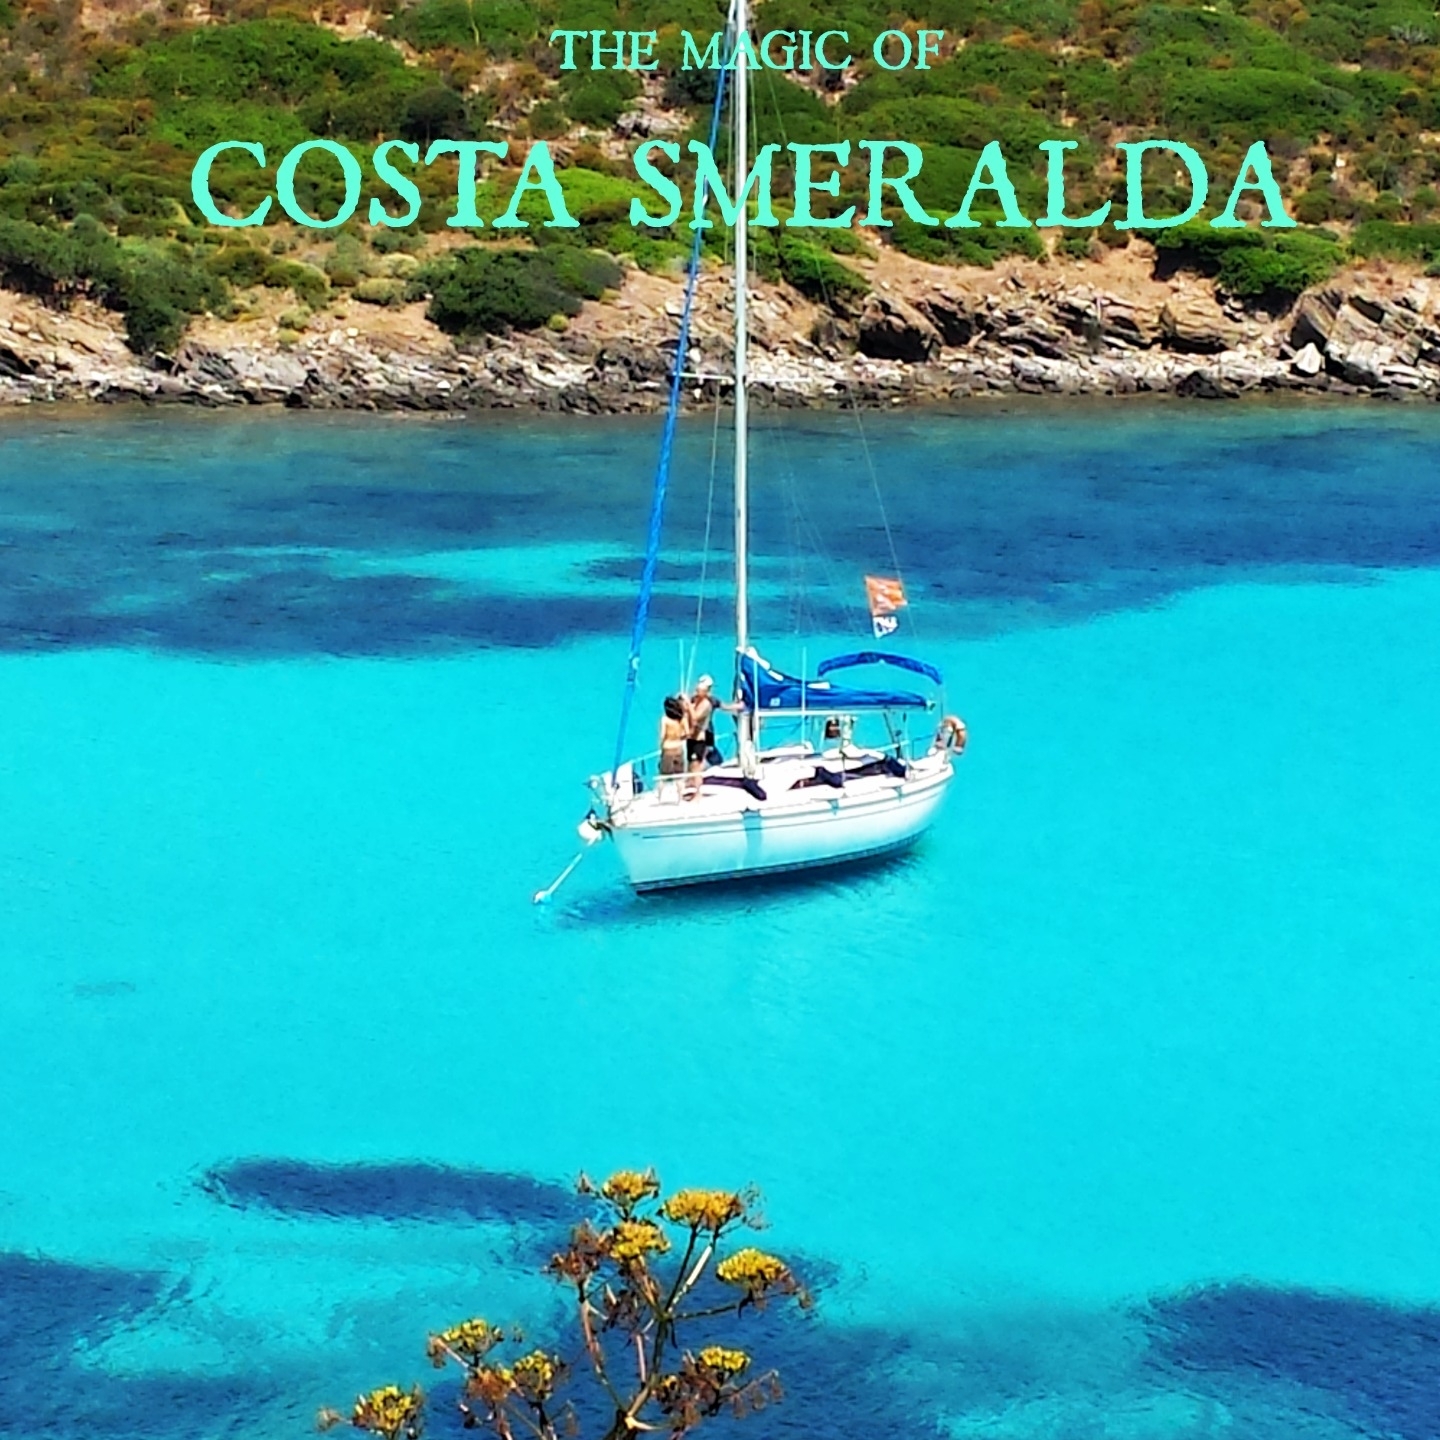 The Magic of Costa Smeralda